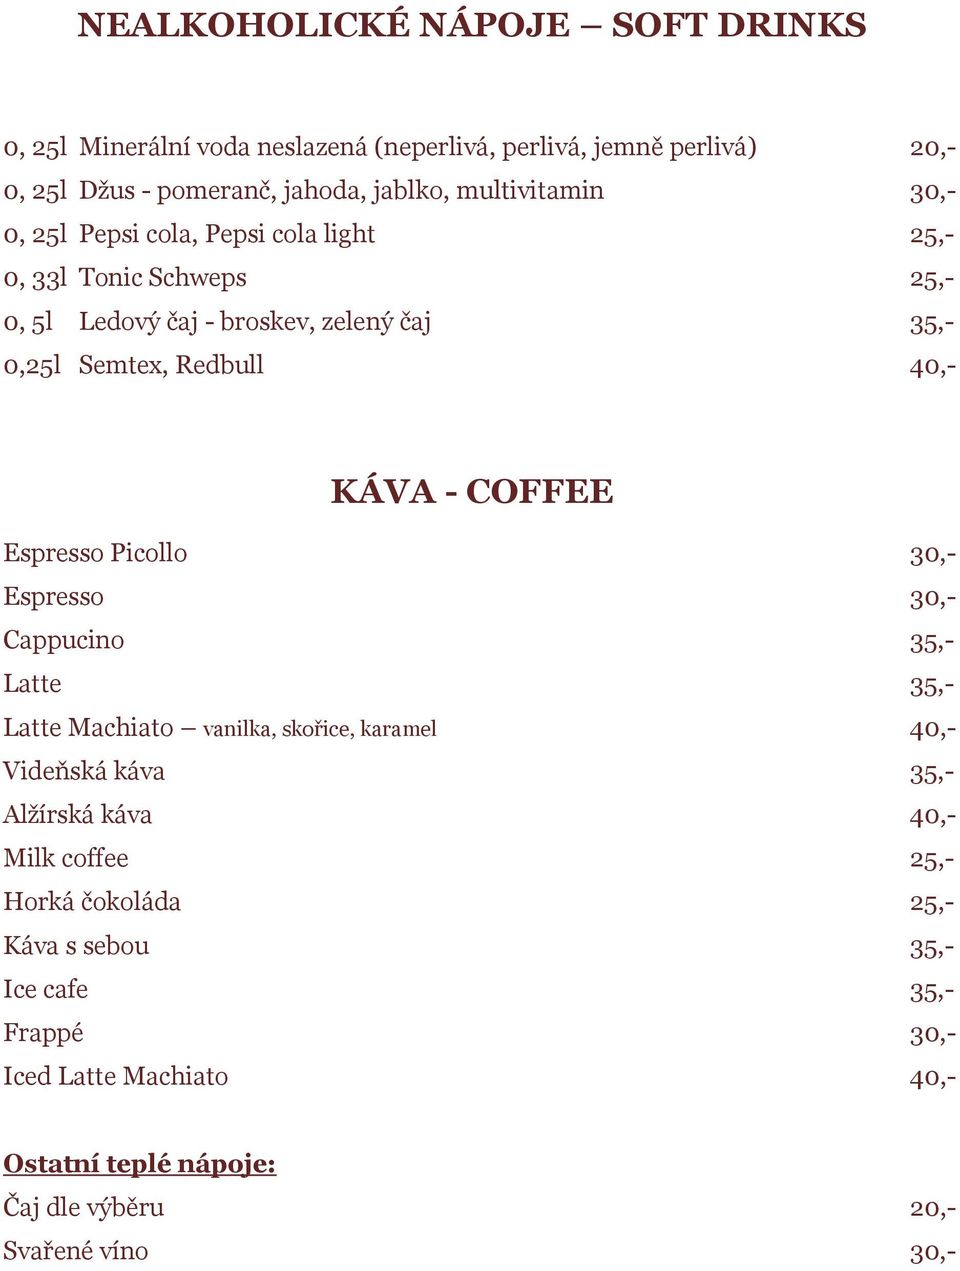 KÁVA - COFFEE Espresso Picollo 30,- Espresso 30,- Cappucino 35,- Latte 35,- Latte Machiato vanilka, skořice, karamel 40,- Videňská káva 35,- Alžírská káva